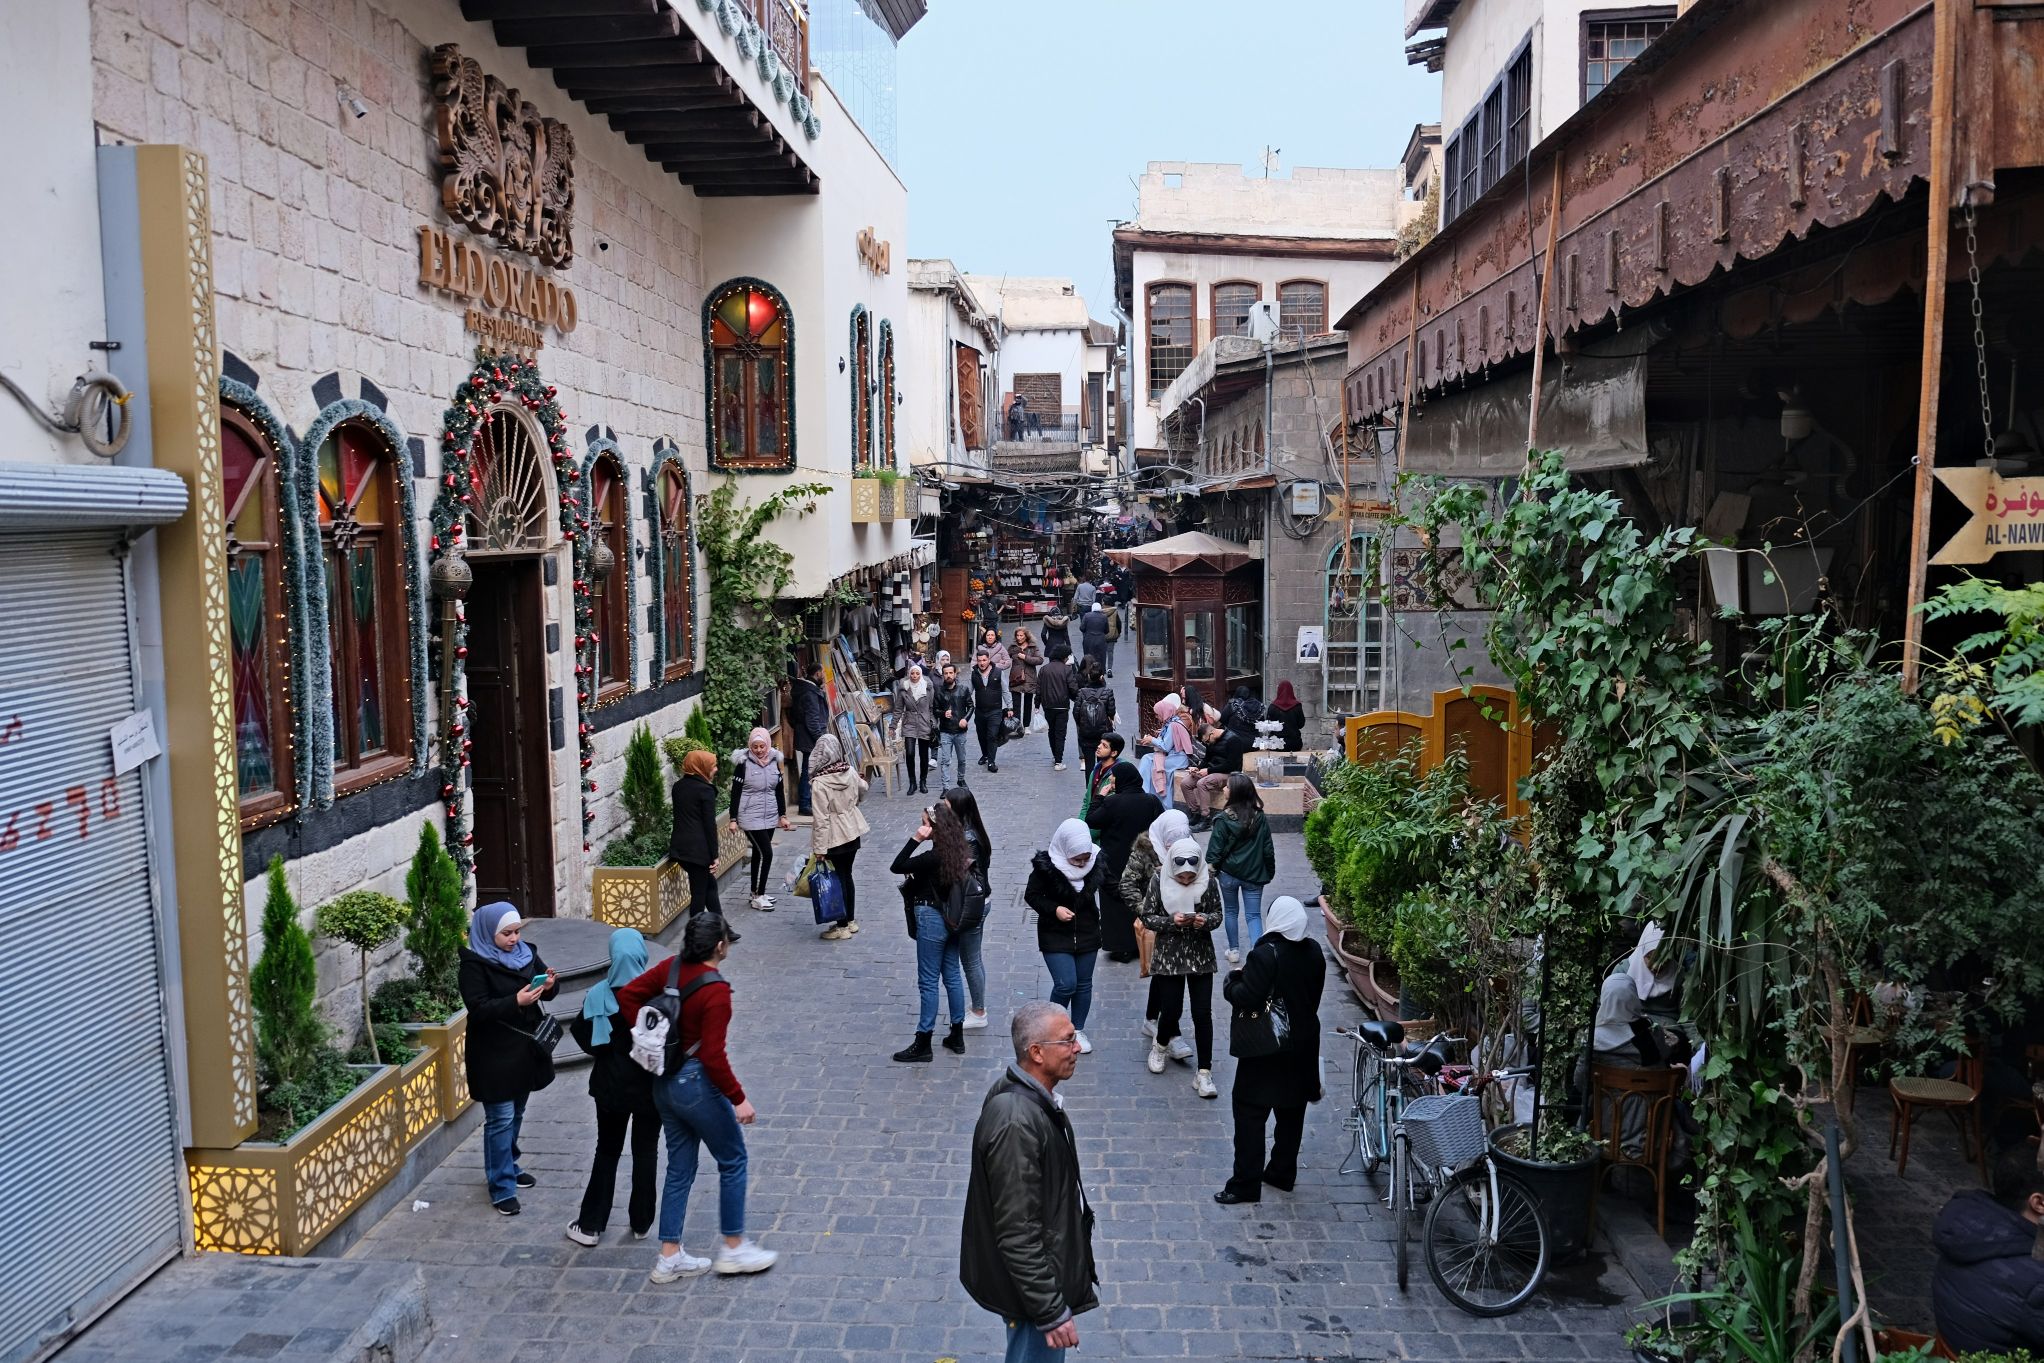 Damasco, Síria – A cidade mais antiga do mundo 🇸🇾 - De Férias - Dicas,  Guias e Viagens Baratas